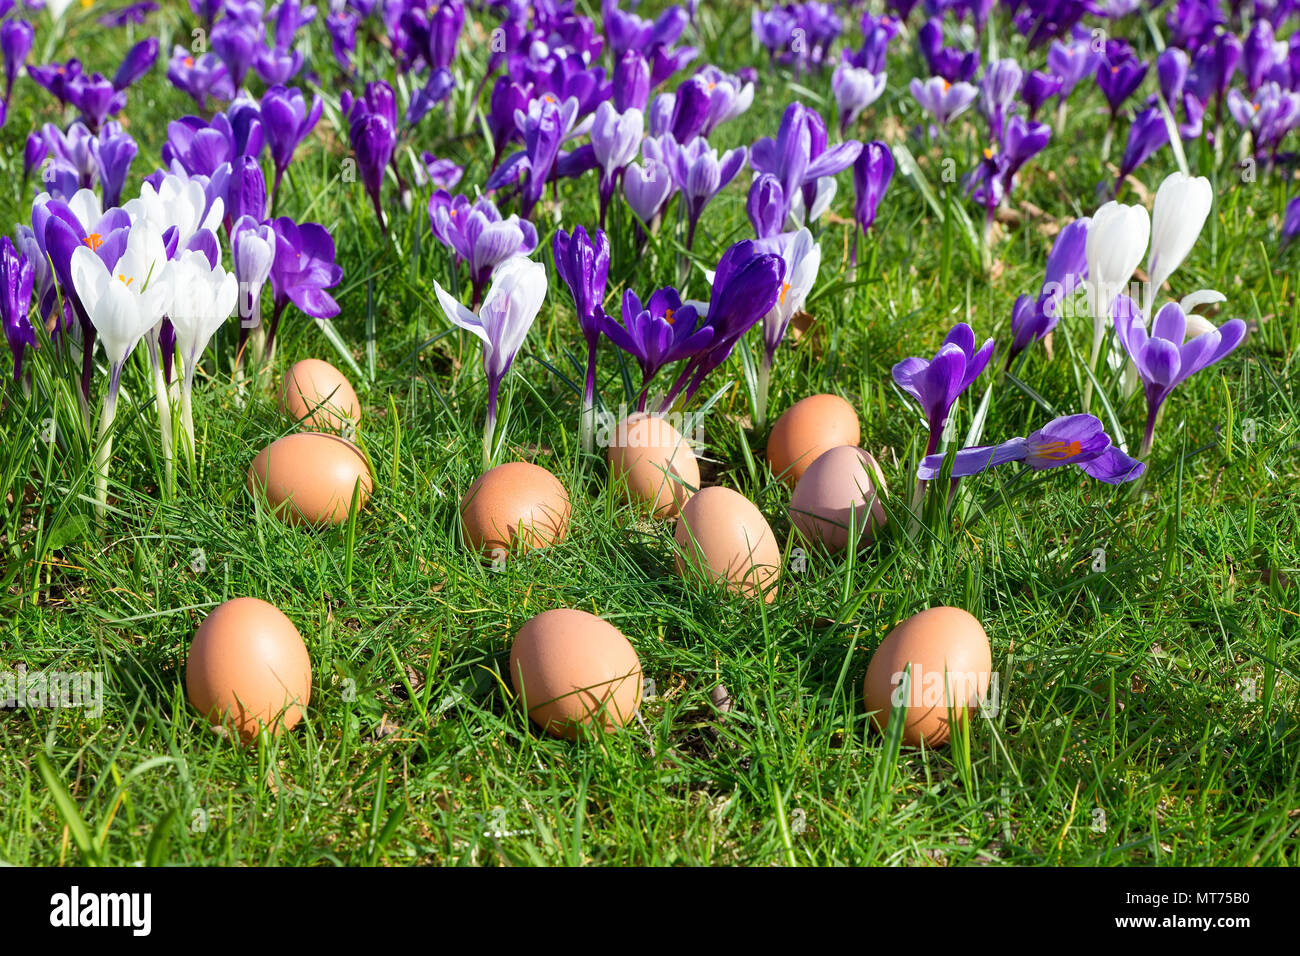 Los huevos de gallina sueltos tumbado en la hierba cerca de blooming azafrán Foto de stock